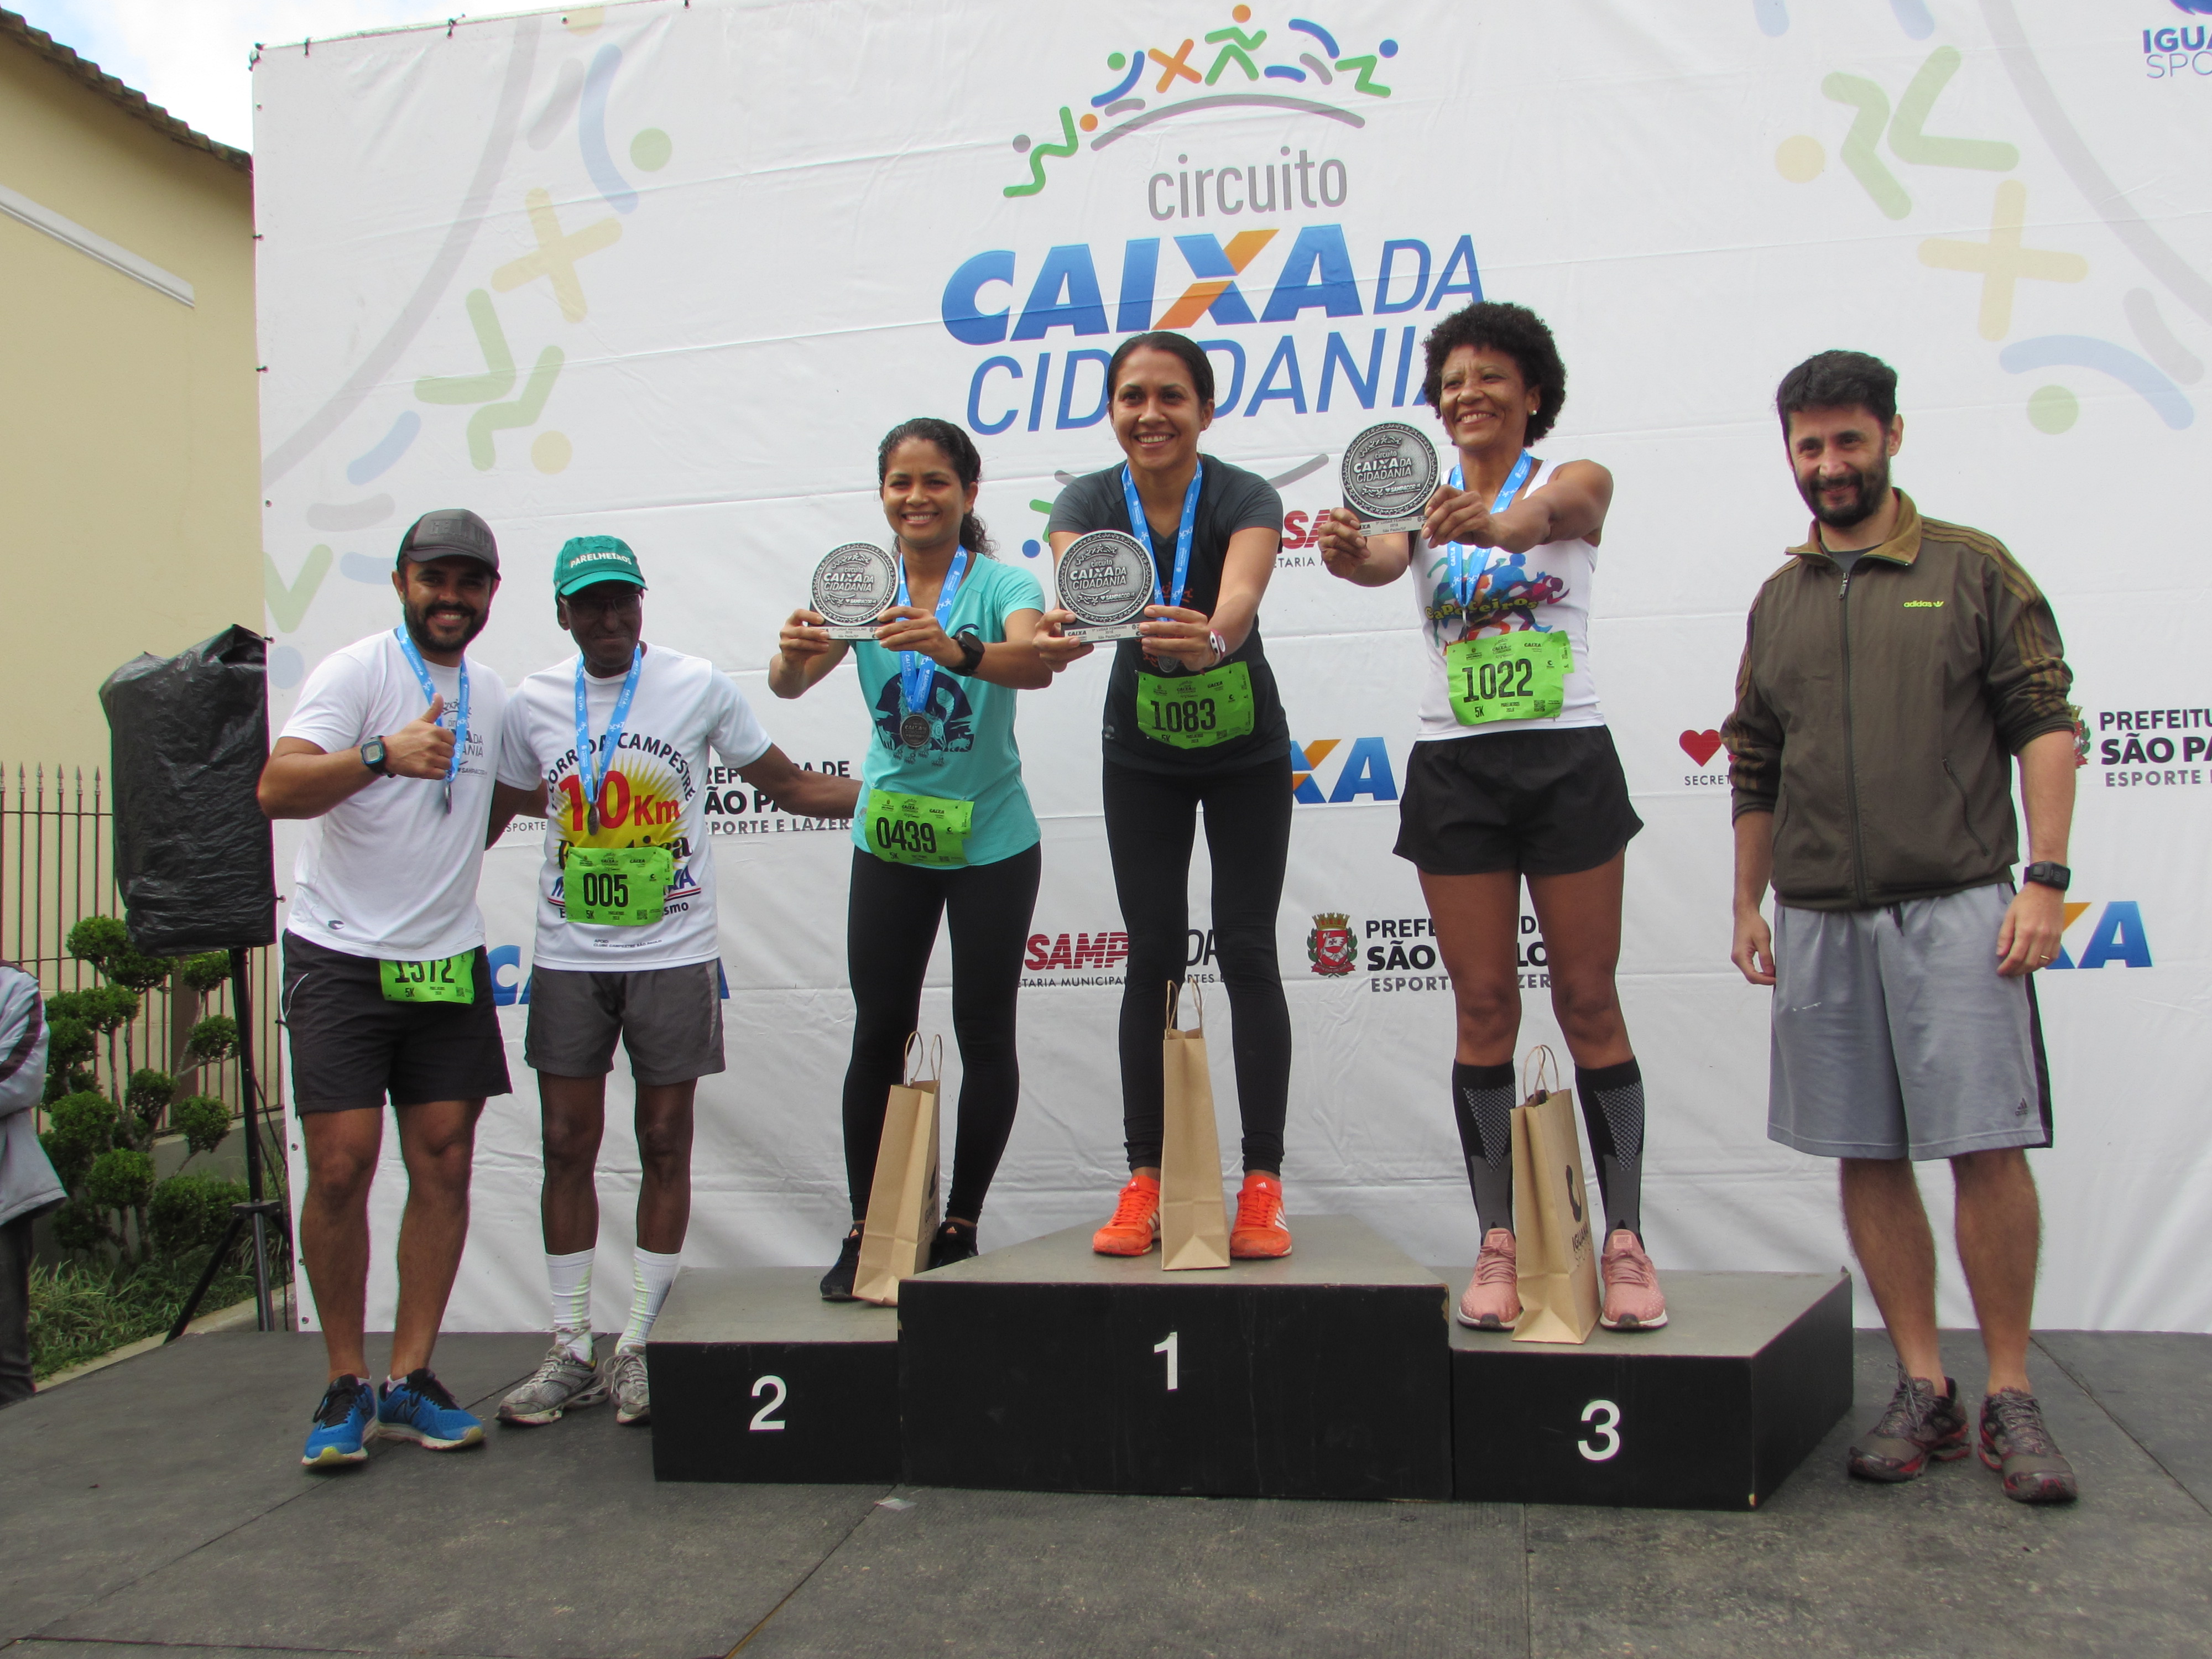 Podium feminino com as três vencedoras e ao lado o Subprefeito Adailson de Oliveira